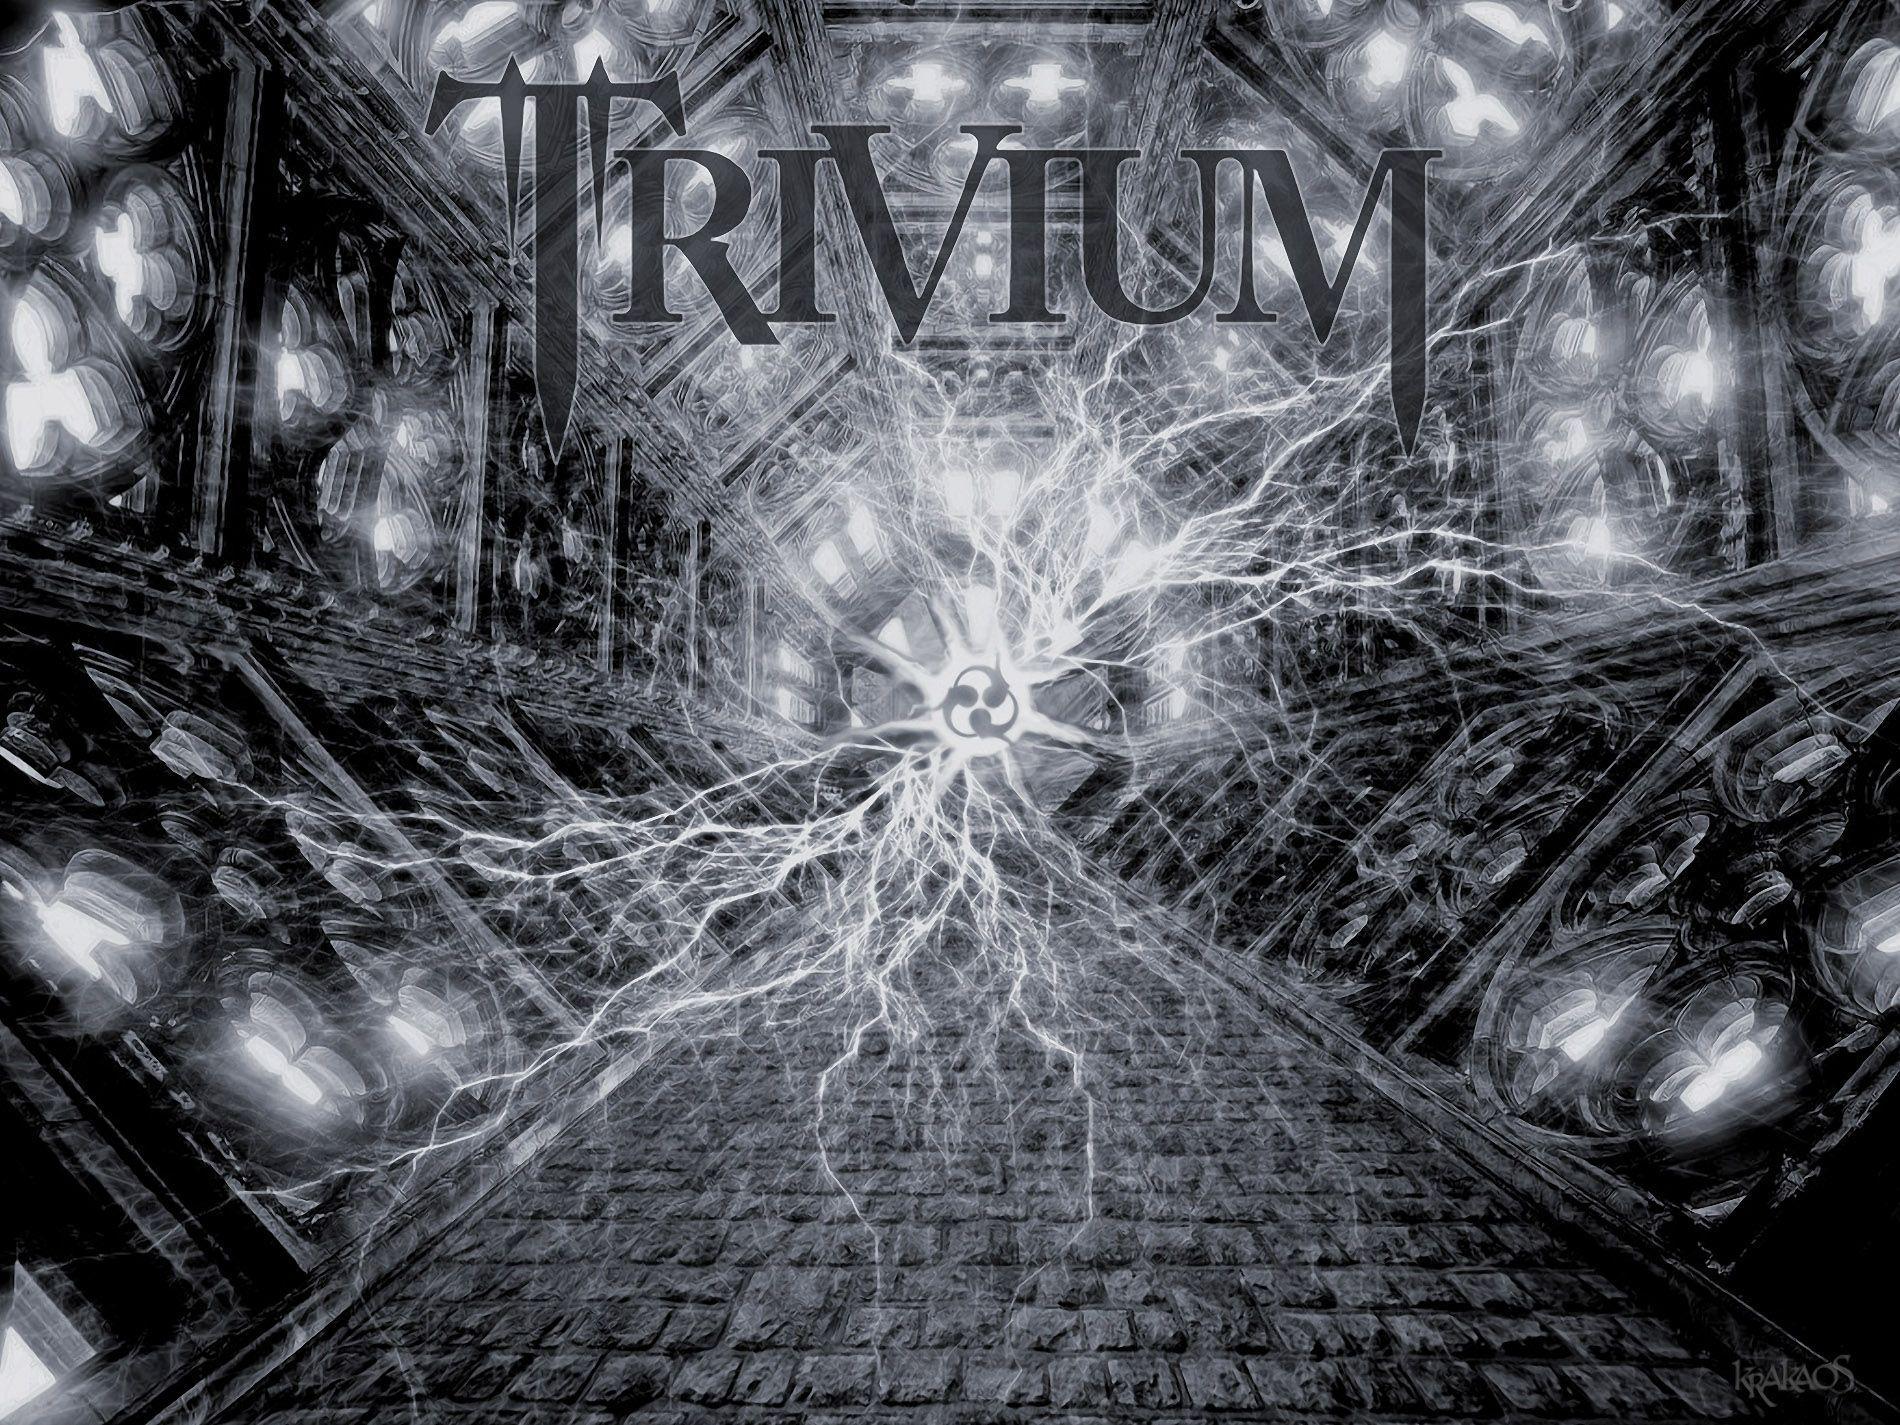 Trivium Of Crusade